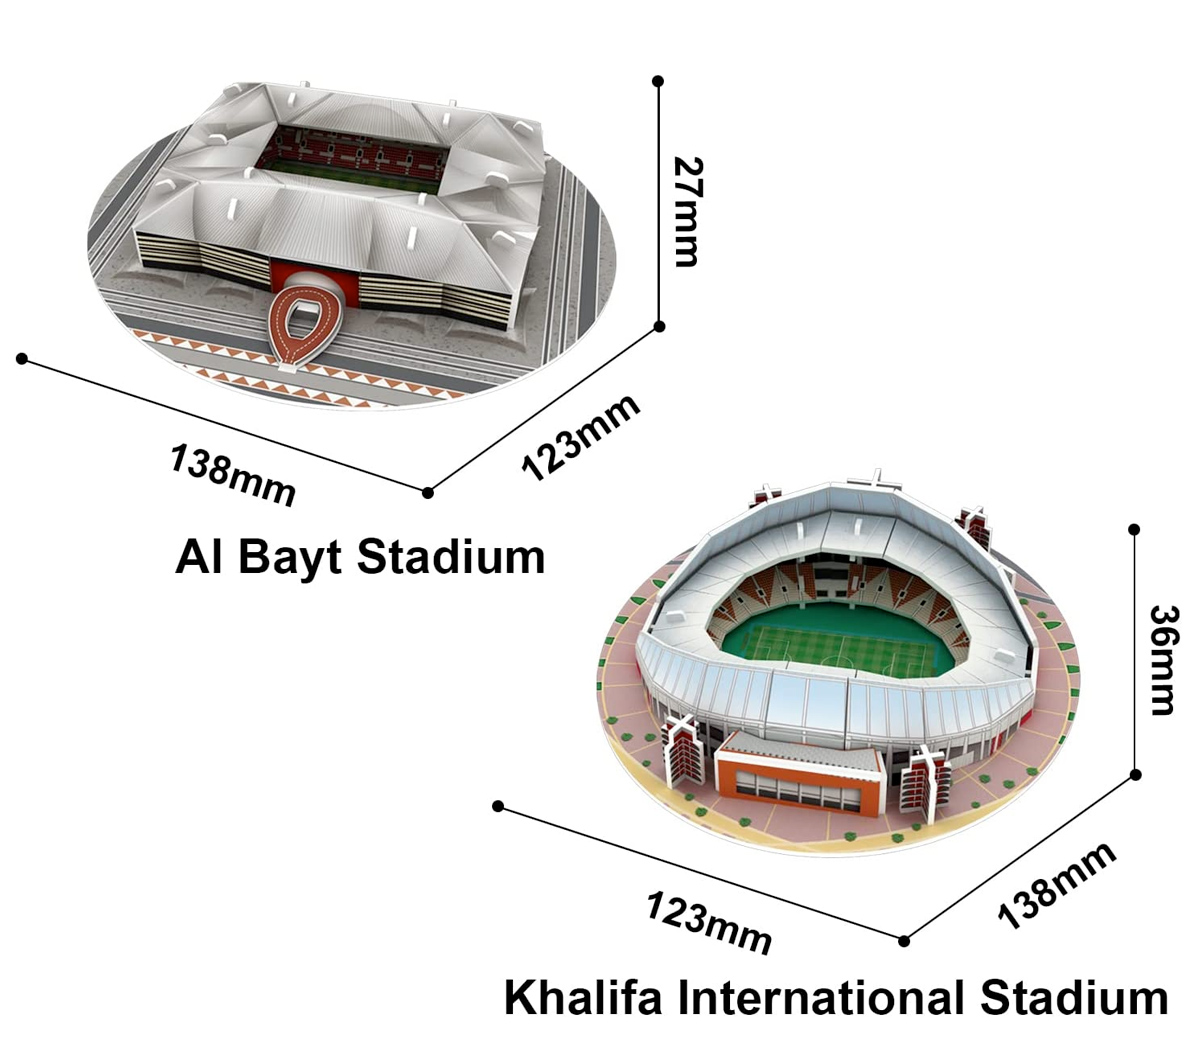 Quebra-Cabeças 3D dos 8 Estádios da Copa do Mundo Qatar 2022